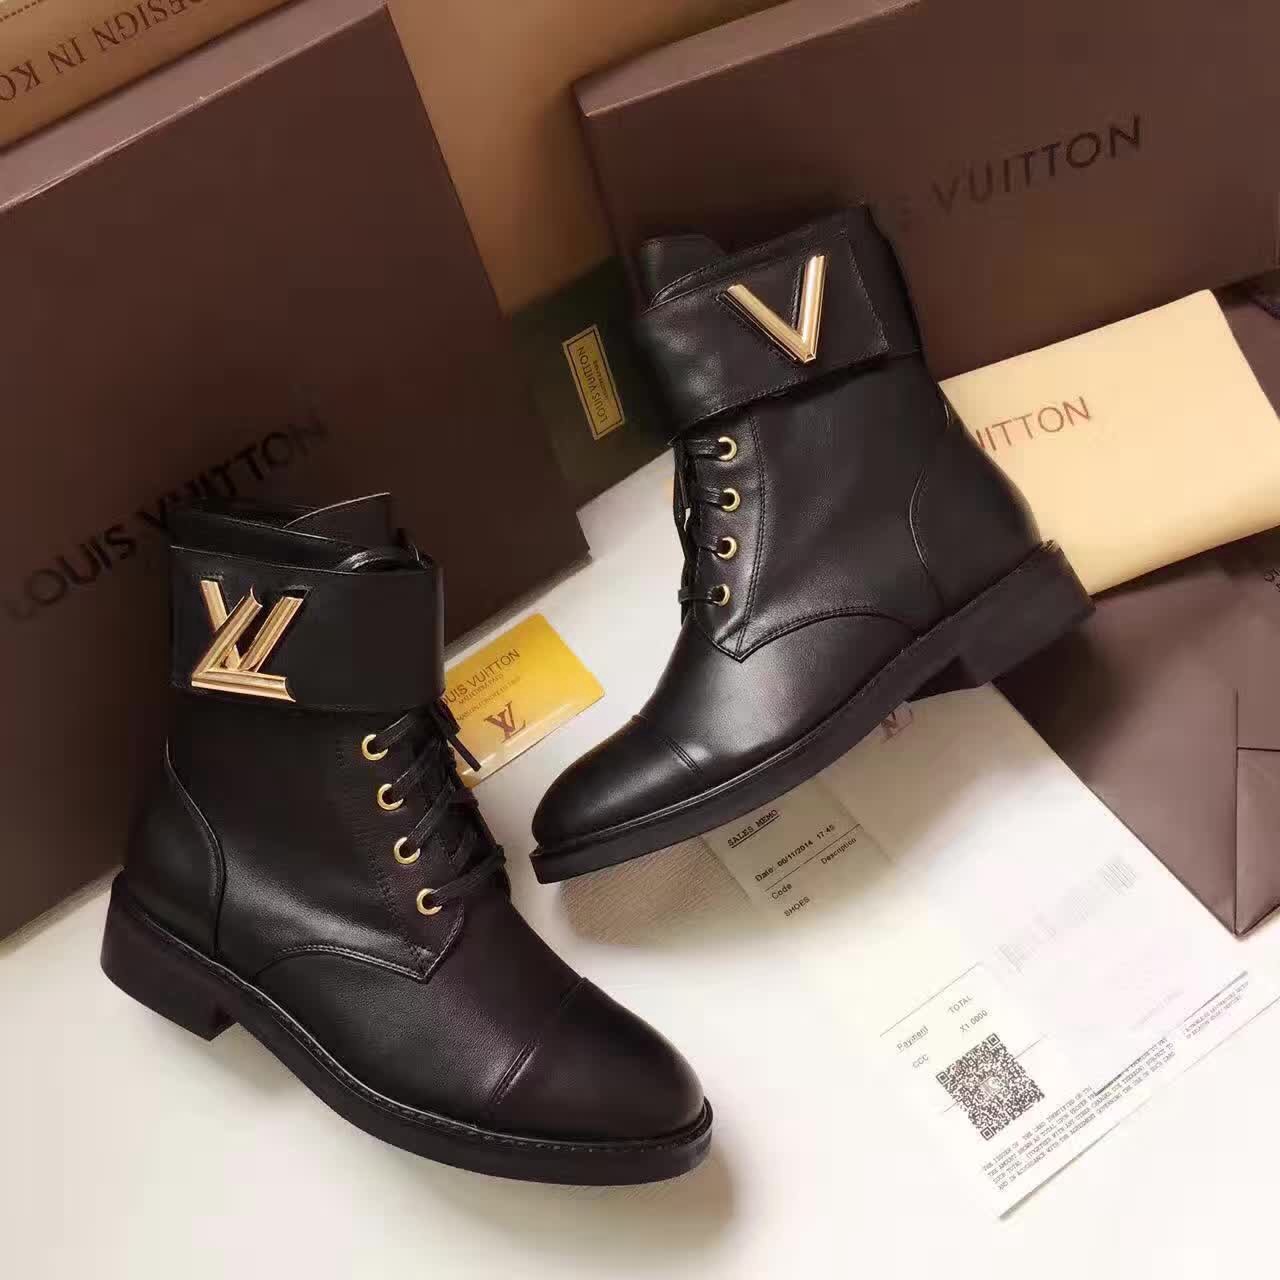 Louis Vuitton Wonderland Ranger Boots 1A1IY7 2016 (GD2083-6100604 )